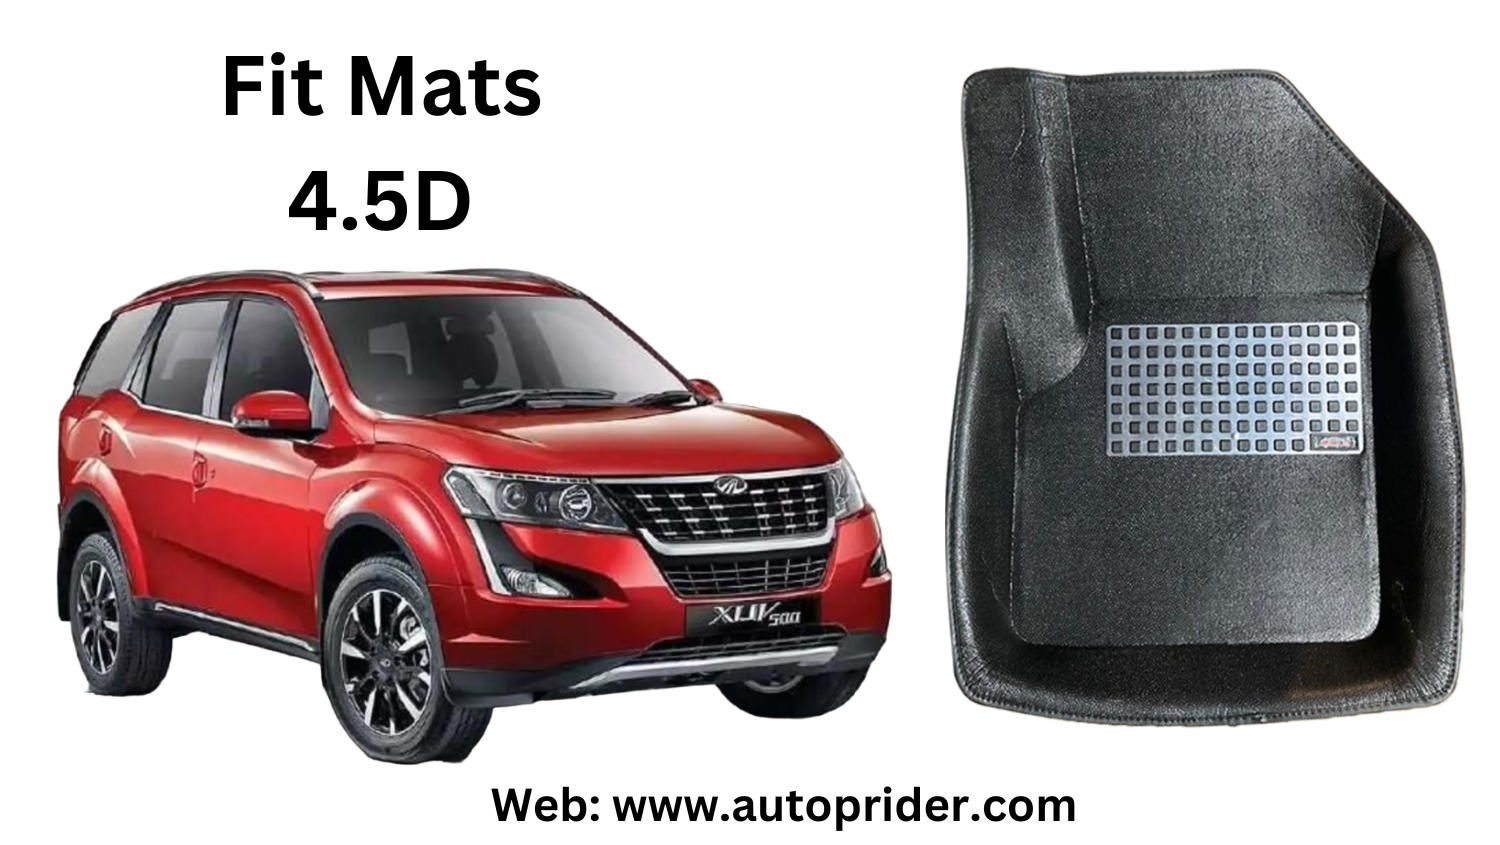 Autoprider | Fit Mats 4.5D Economy Car Mats for Mahindra XUV-500